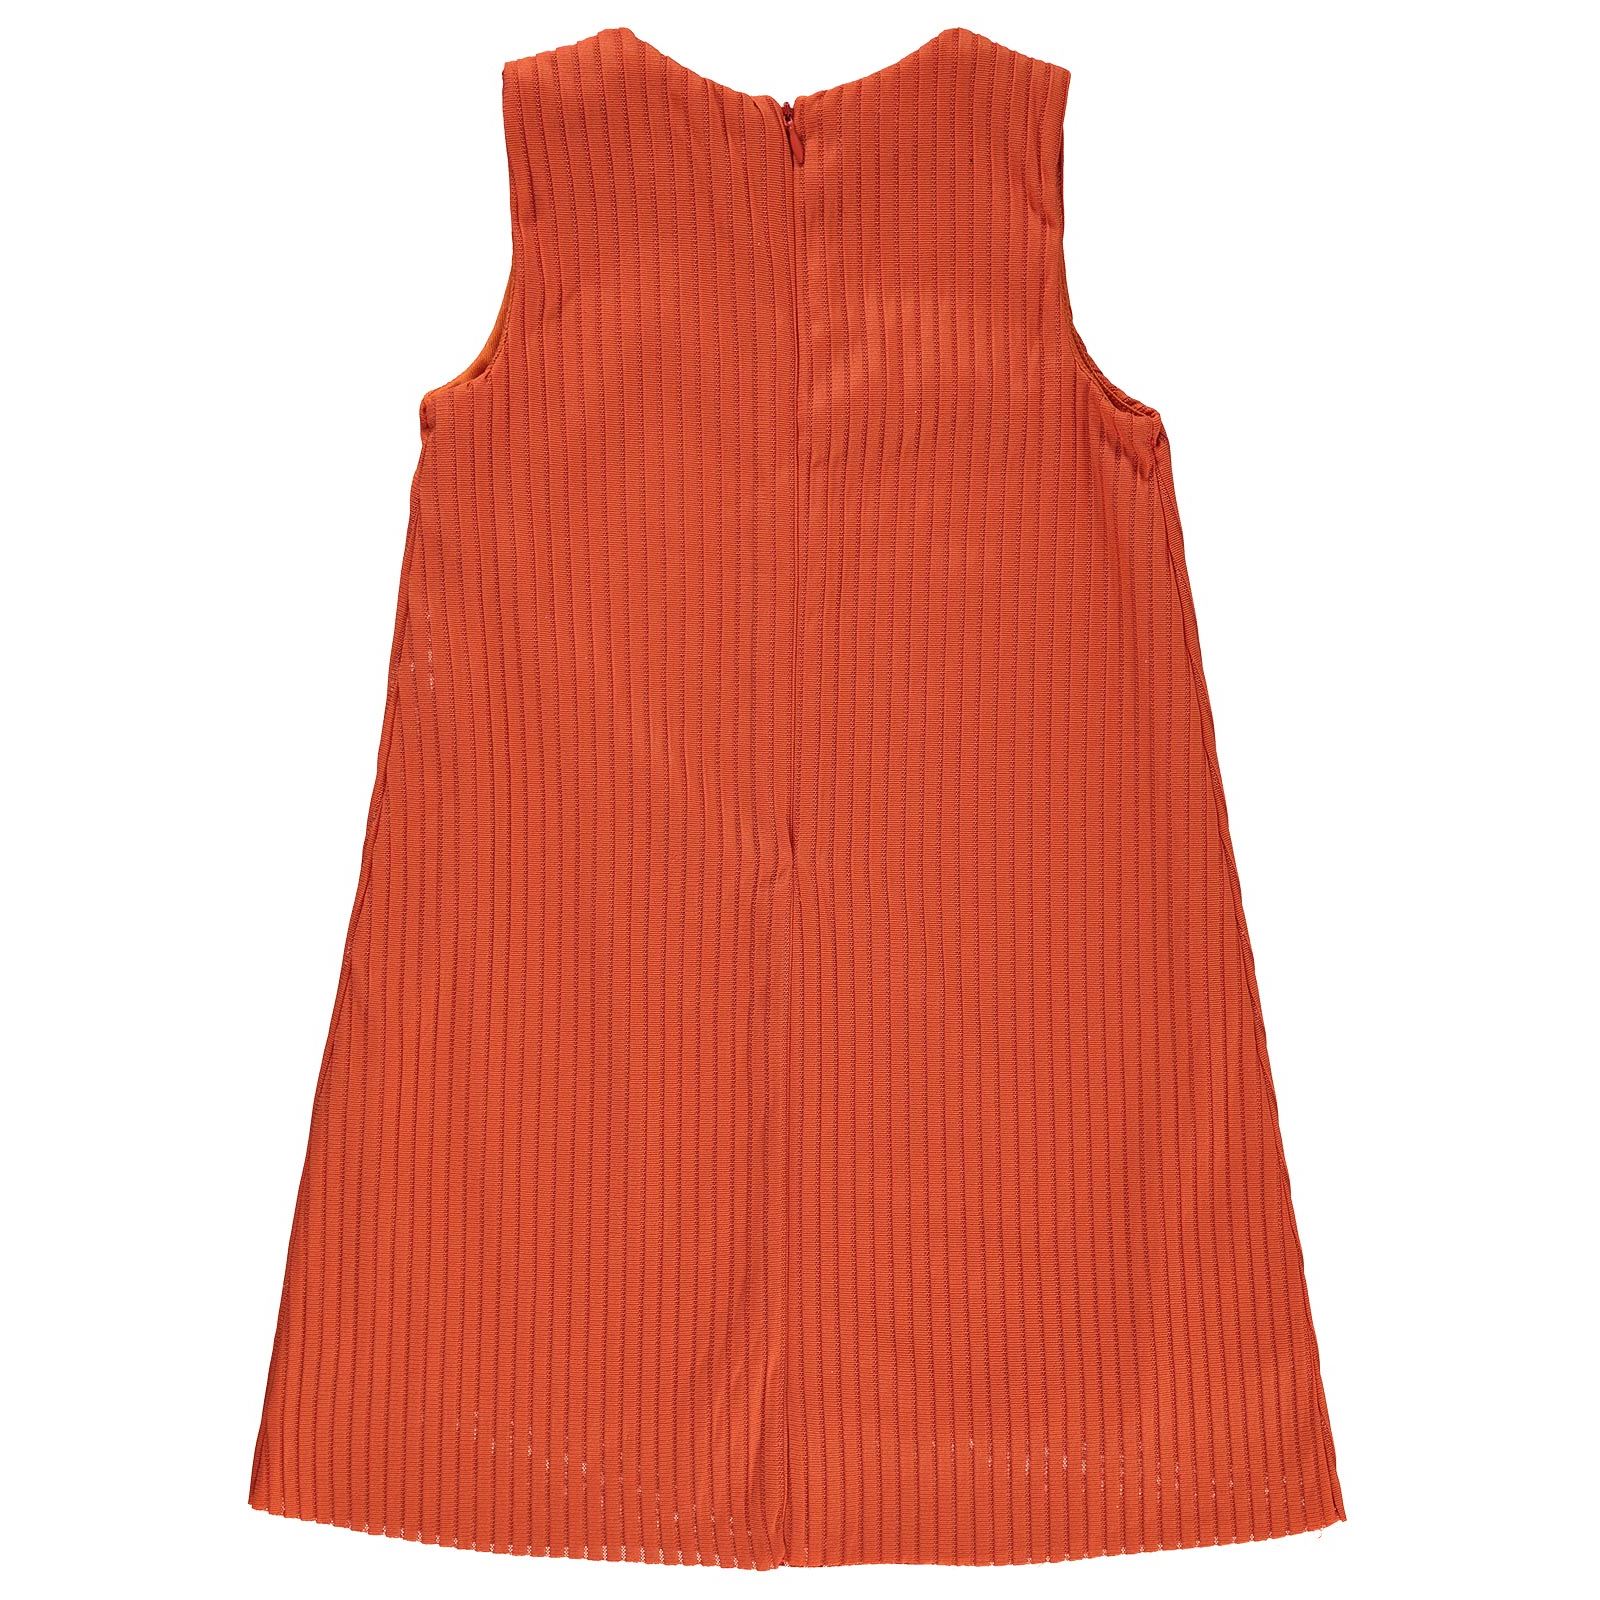 Wecan Kız Çocuk Çantalı Elbise 6-9 Yaş Kiremit